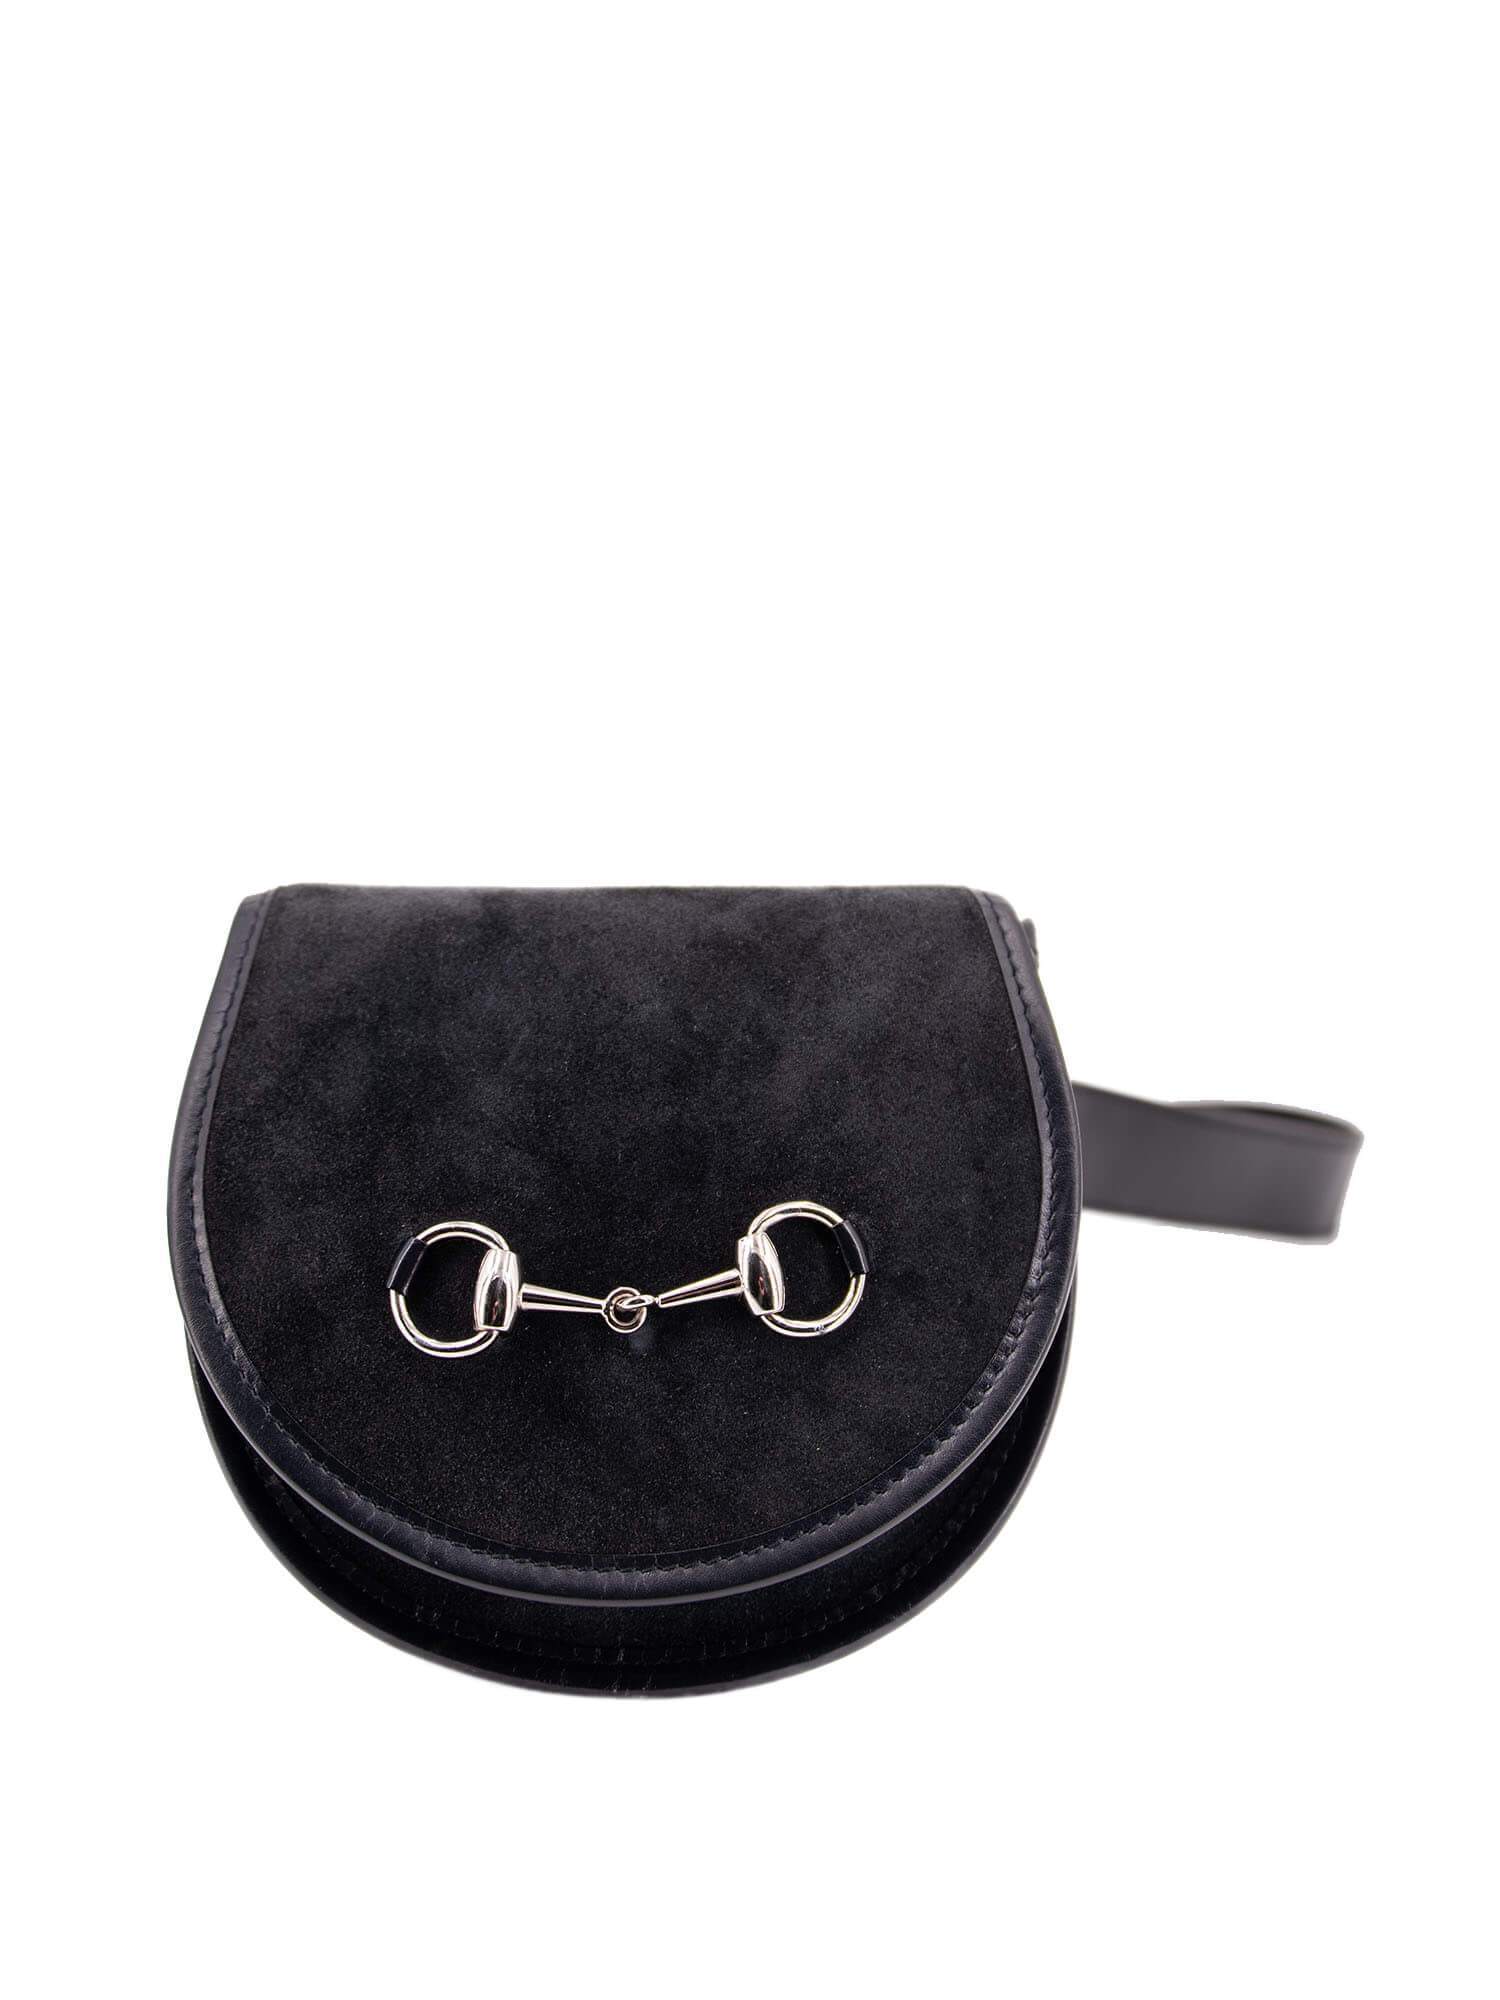 Gucci Suede Leather Horsebit Belt Bag Blue-designer resale